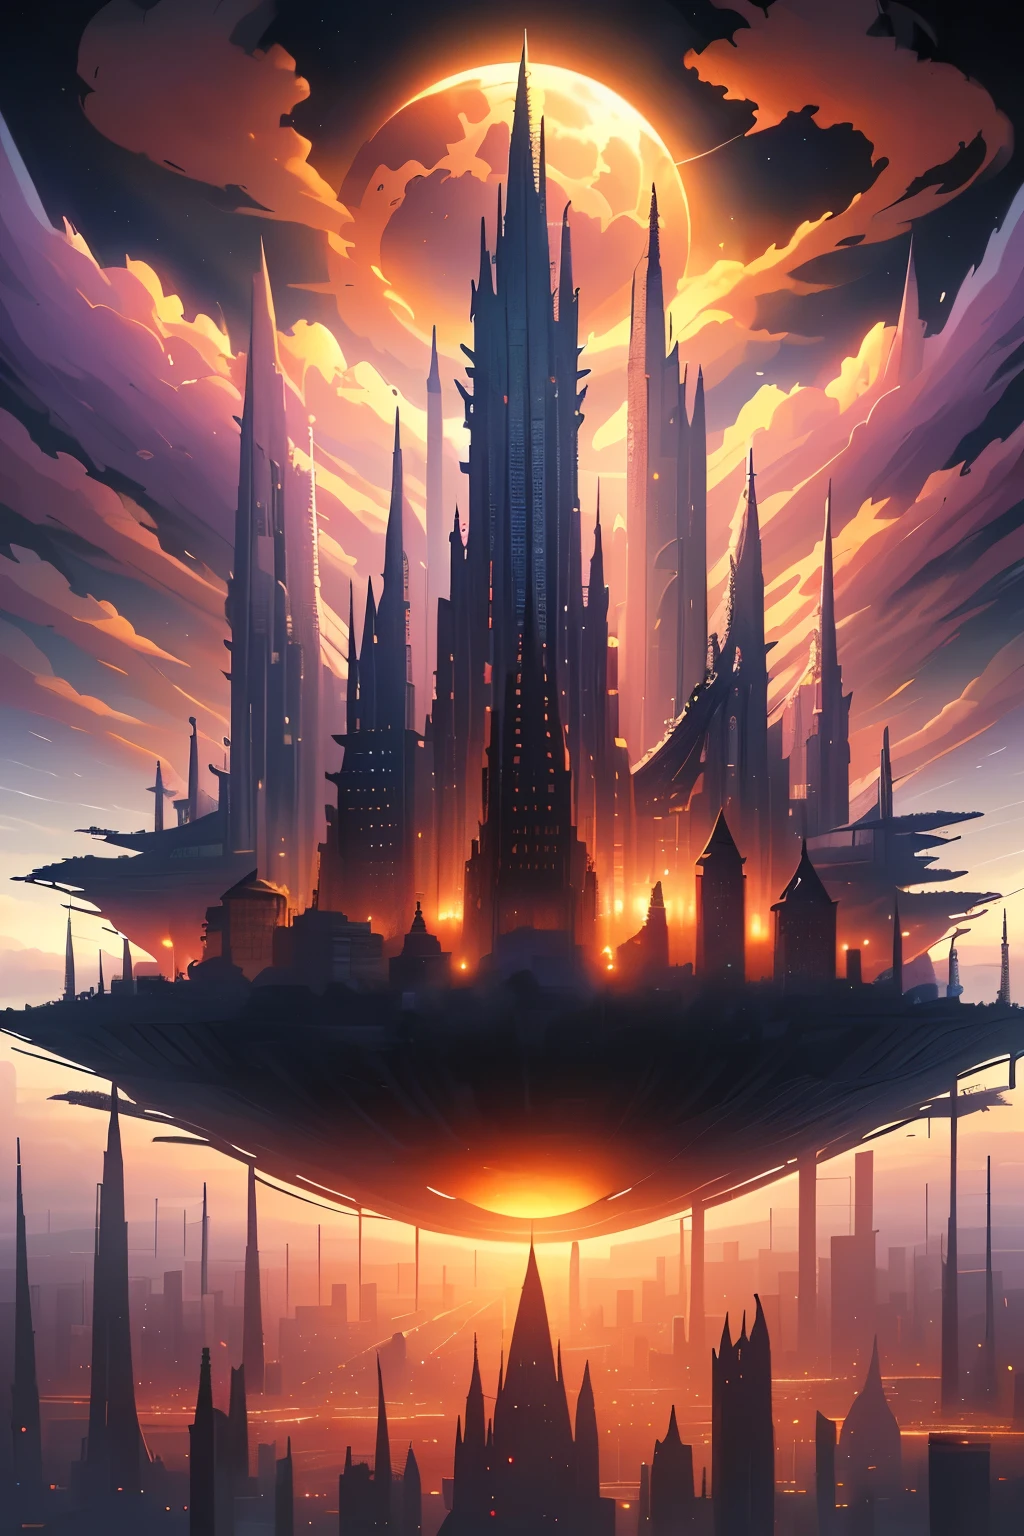 ((шедевр)), Лучшее качество, (8К, Лучшее качество, шедевр:1.2), ультрадетализированный, иллюстрация, большой город фантазий, научная фантастика, эфирный город, Плавающий город, много планет в небе, облака вокруг, небесная архитектура, фиолетовая энергия оставляет рубцы вокруг, Гигантский замок в центре, астральное небо